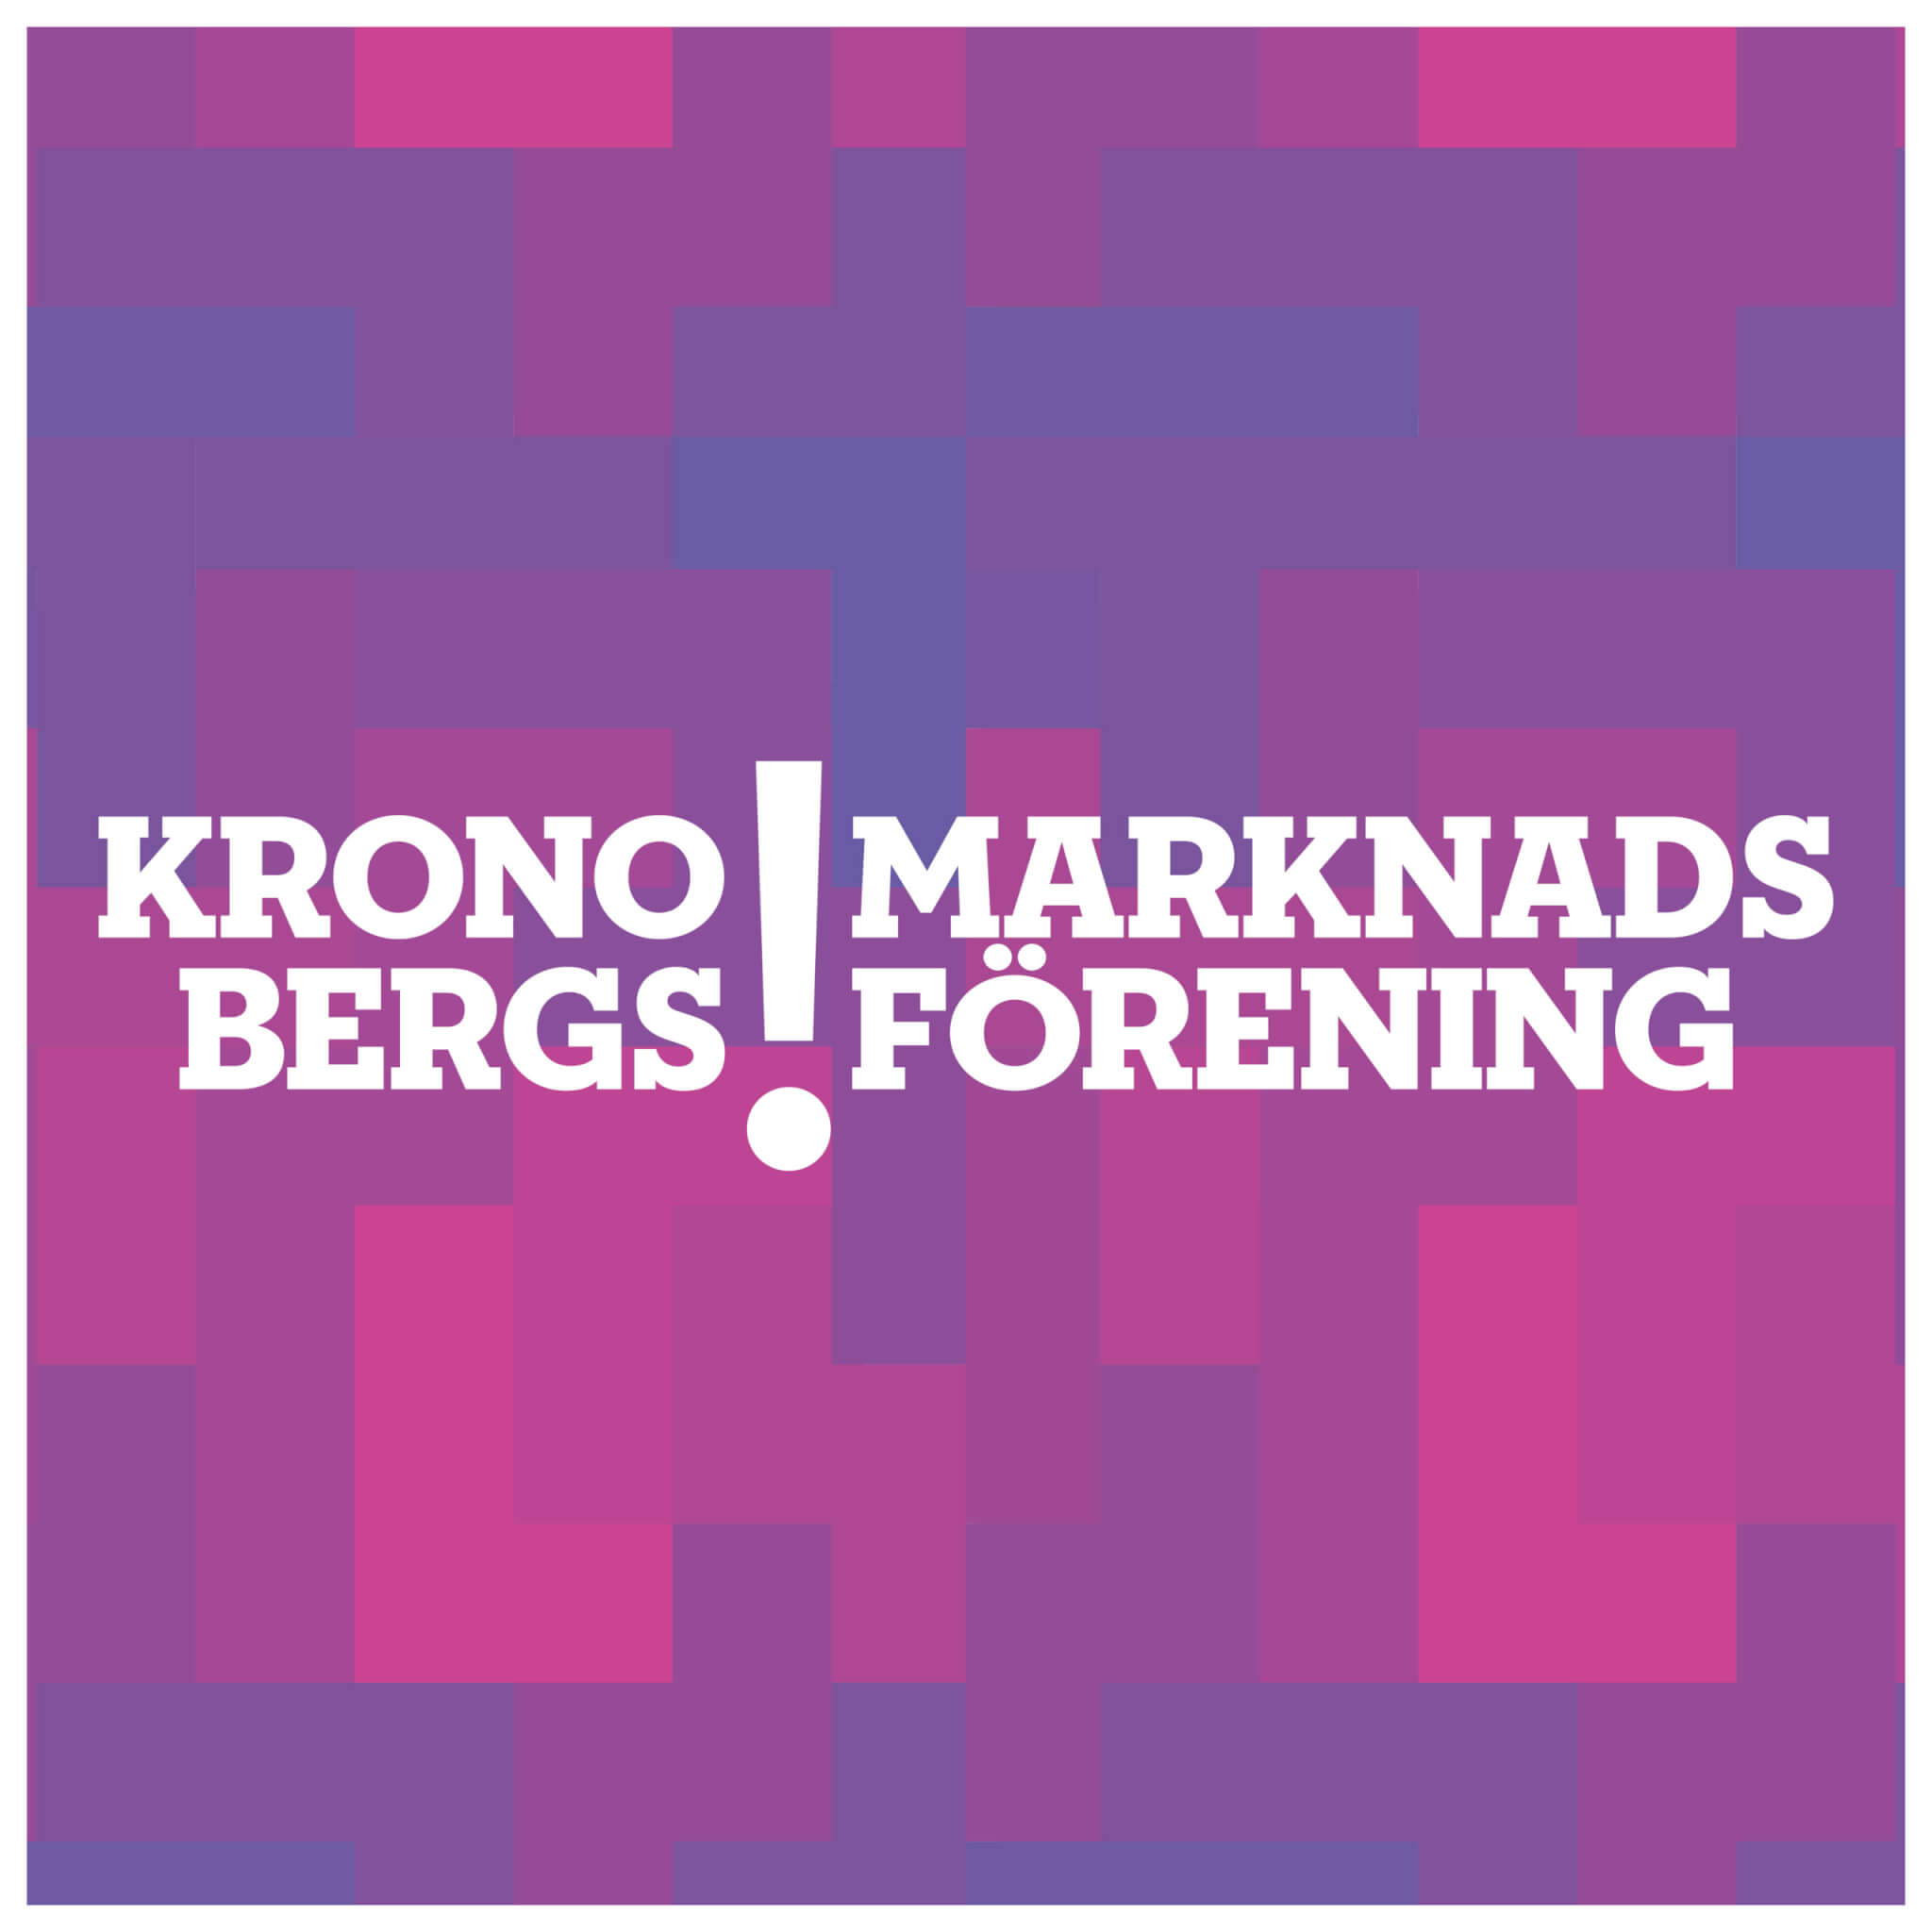 Vi är medlemmar i Kronobergs Marknadsförening - KROM